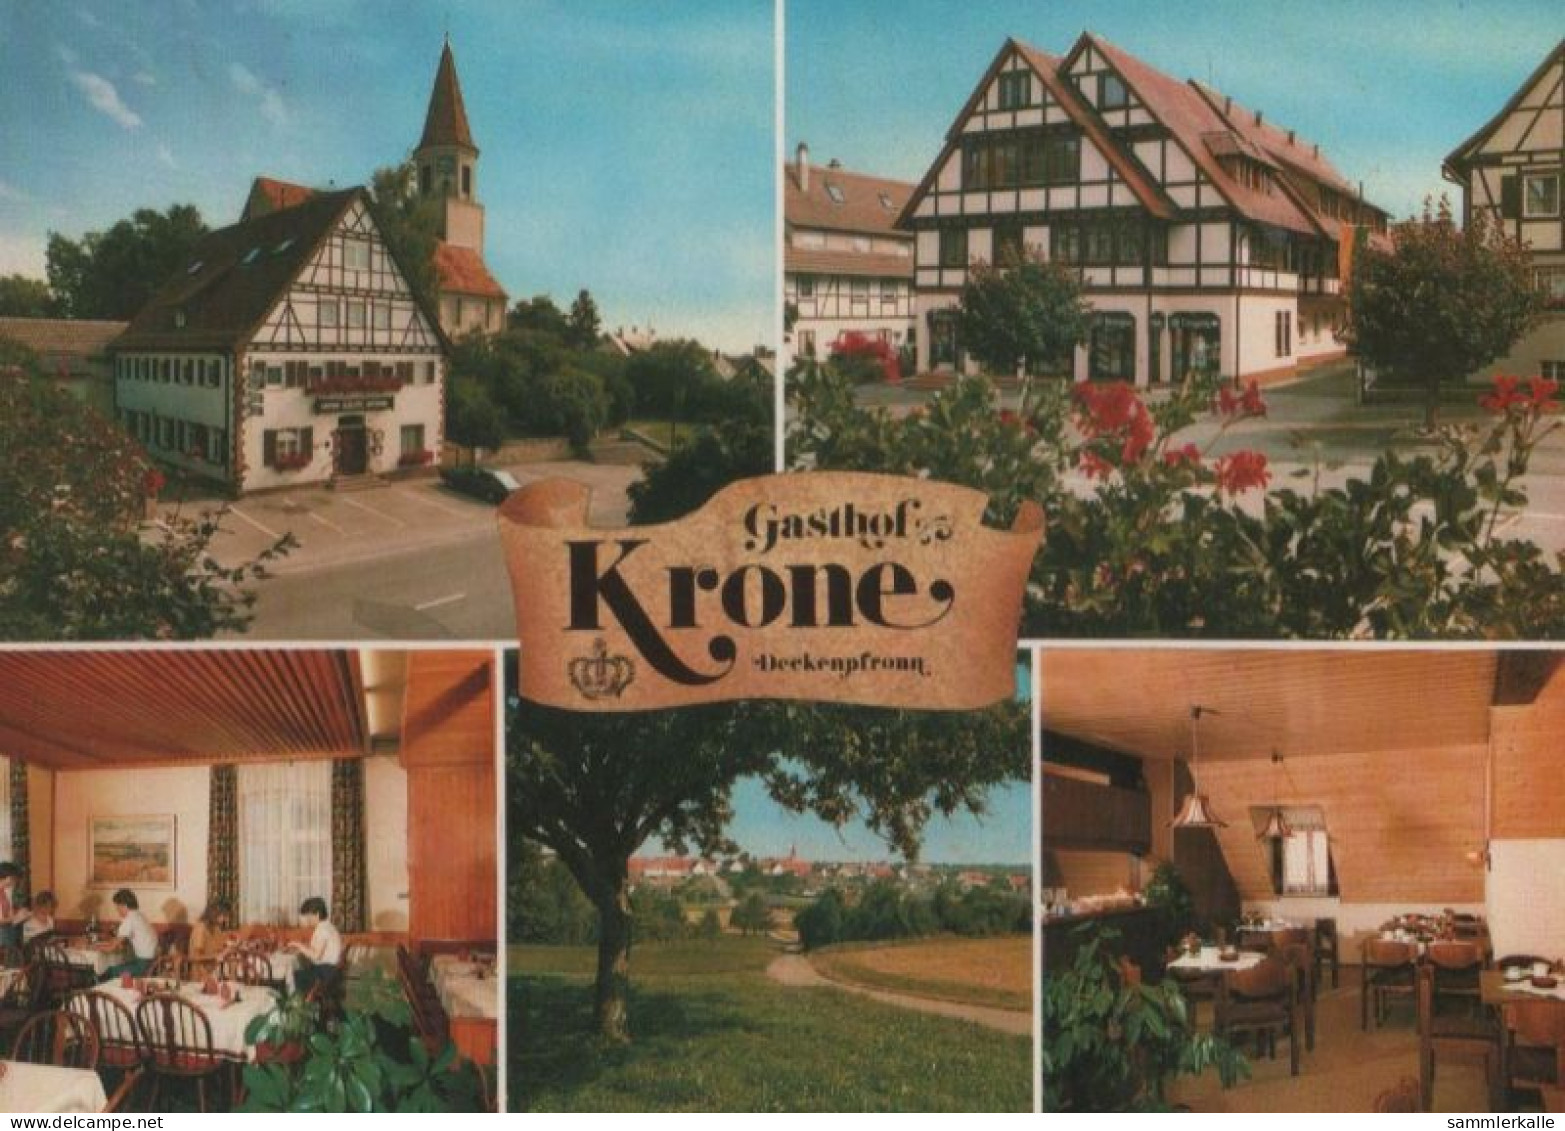 63834 - Deckenpfronn - Gasthof Krone - Ca. 1980 - Boeblingen